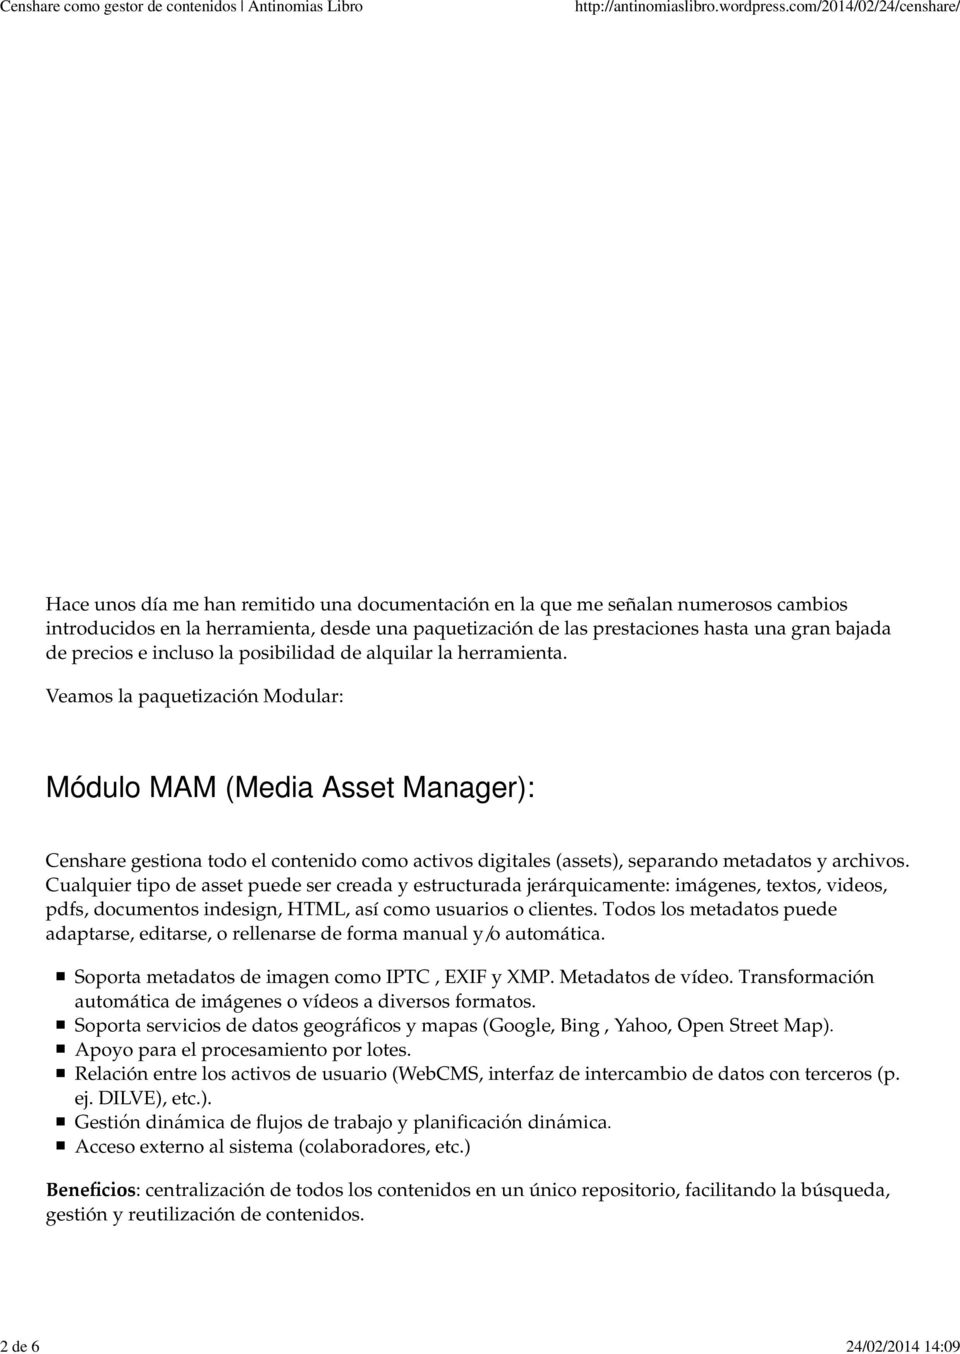 Veamos la paquetización Modular: Módulo MAM (Media Asset Manager): Censhare gestiona todo el contenido como activos digitales (assets), separando metadatos y archivos.